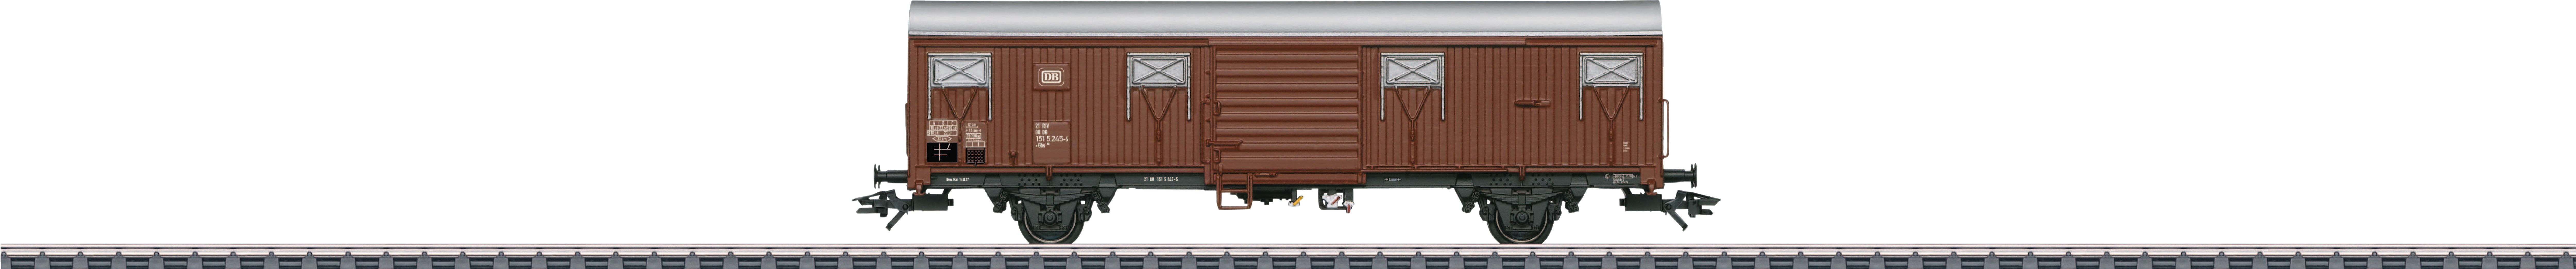 Güterwagen »Spundwandwagen Gbs 256 - 47311«